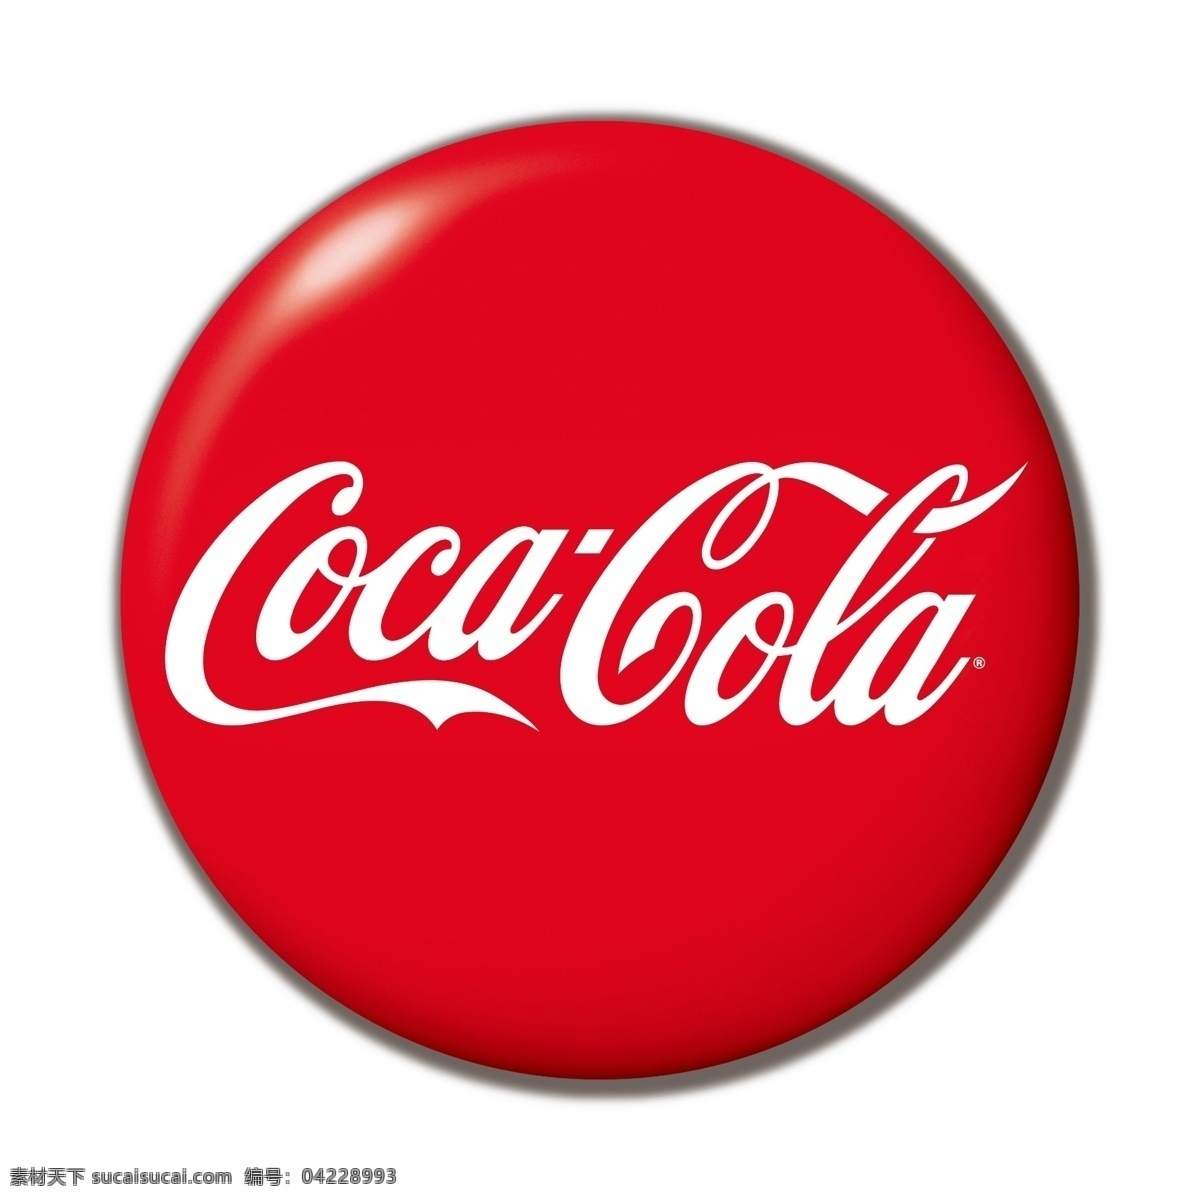 可口可乐 英文 logo cocacola 碳酸饮料 分层 源文件